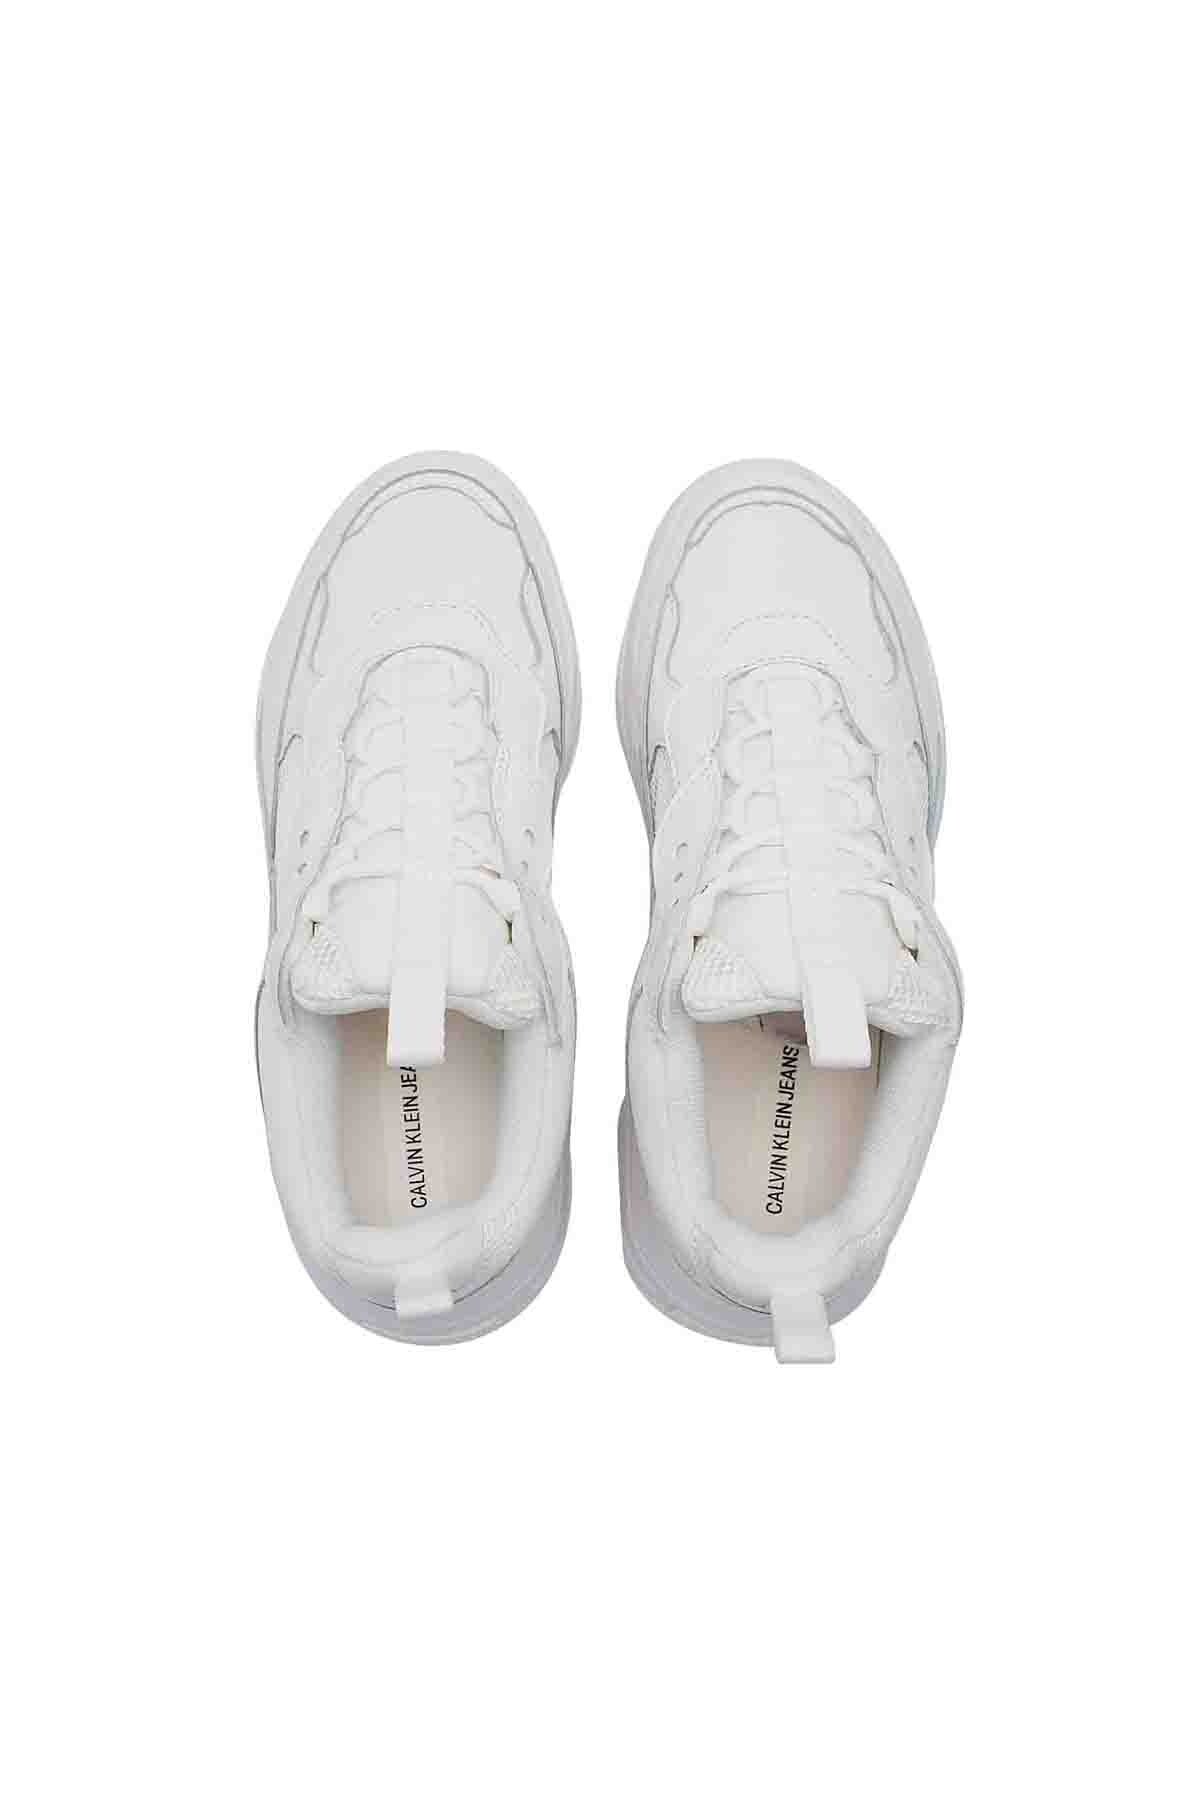 Calvin Klein Marka Logolu Kalın Taban Sneaker Erkek Ayakkabı 00000S0591 BIW BEYAZ